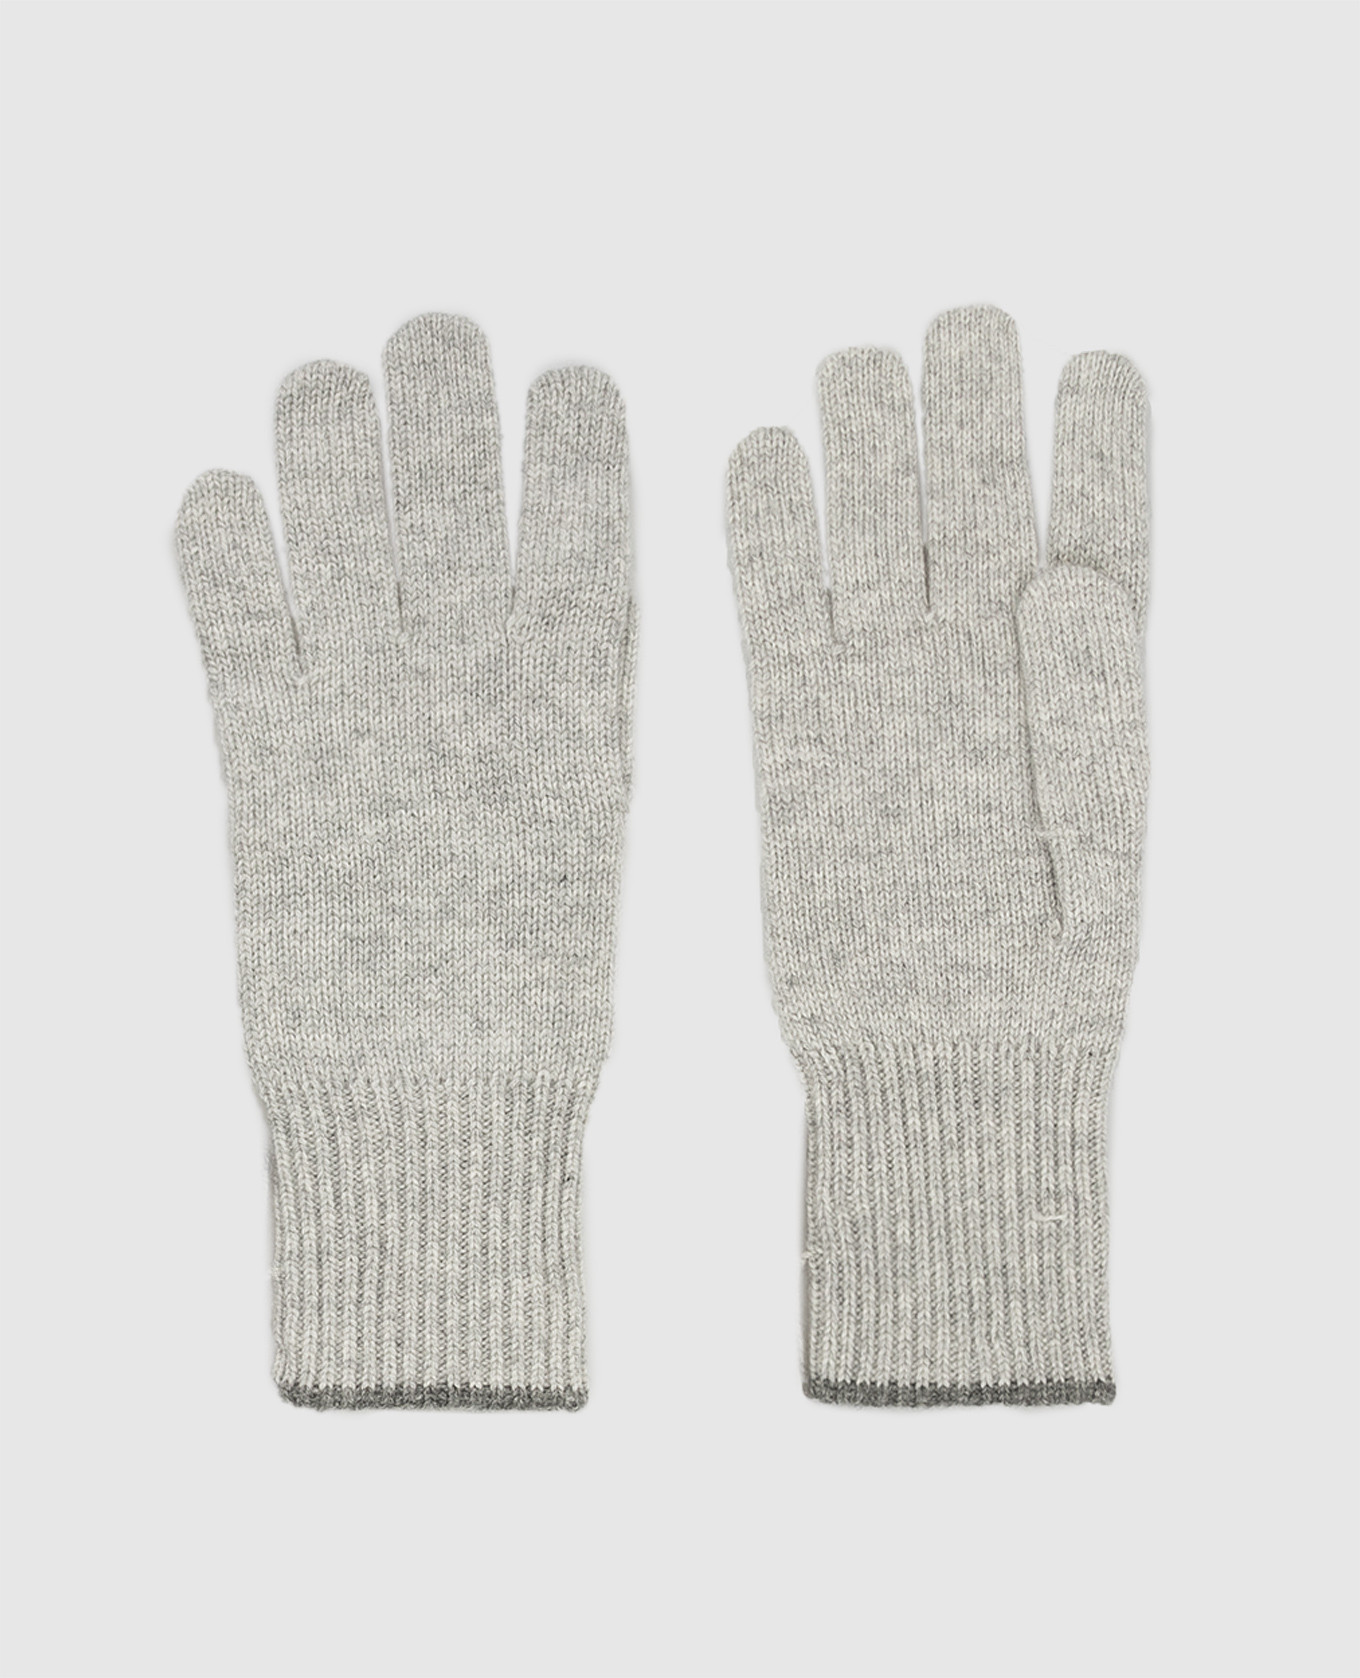 Light gray cashmere gloves